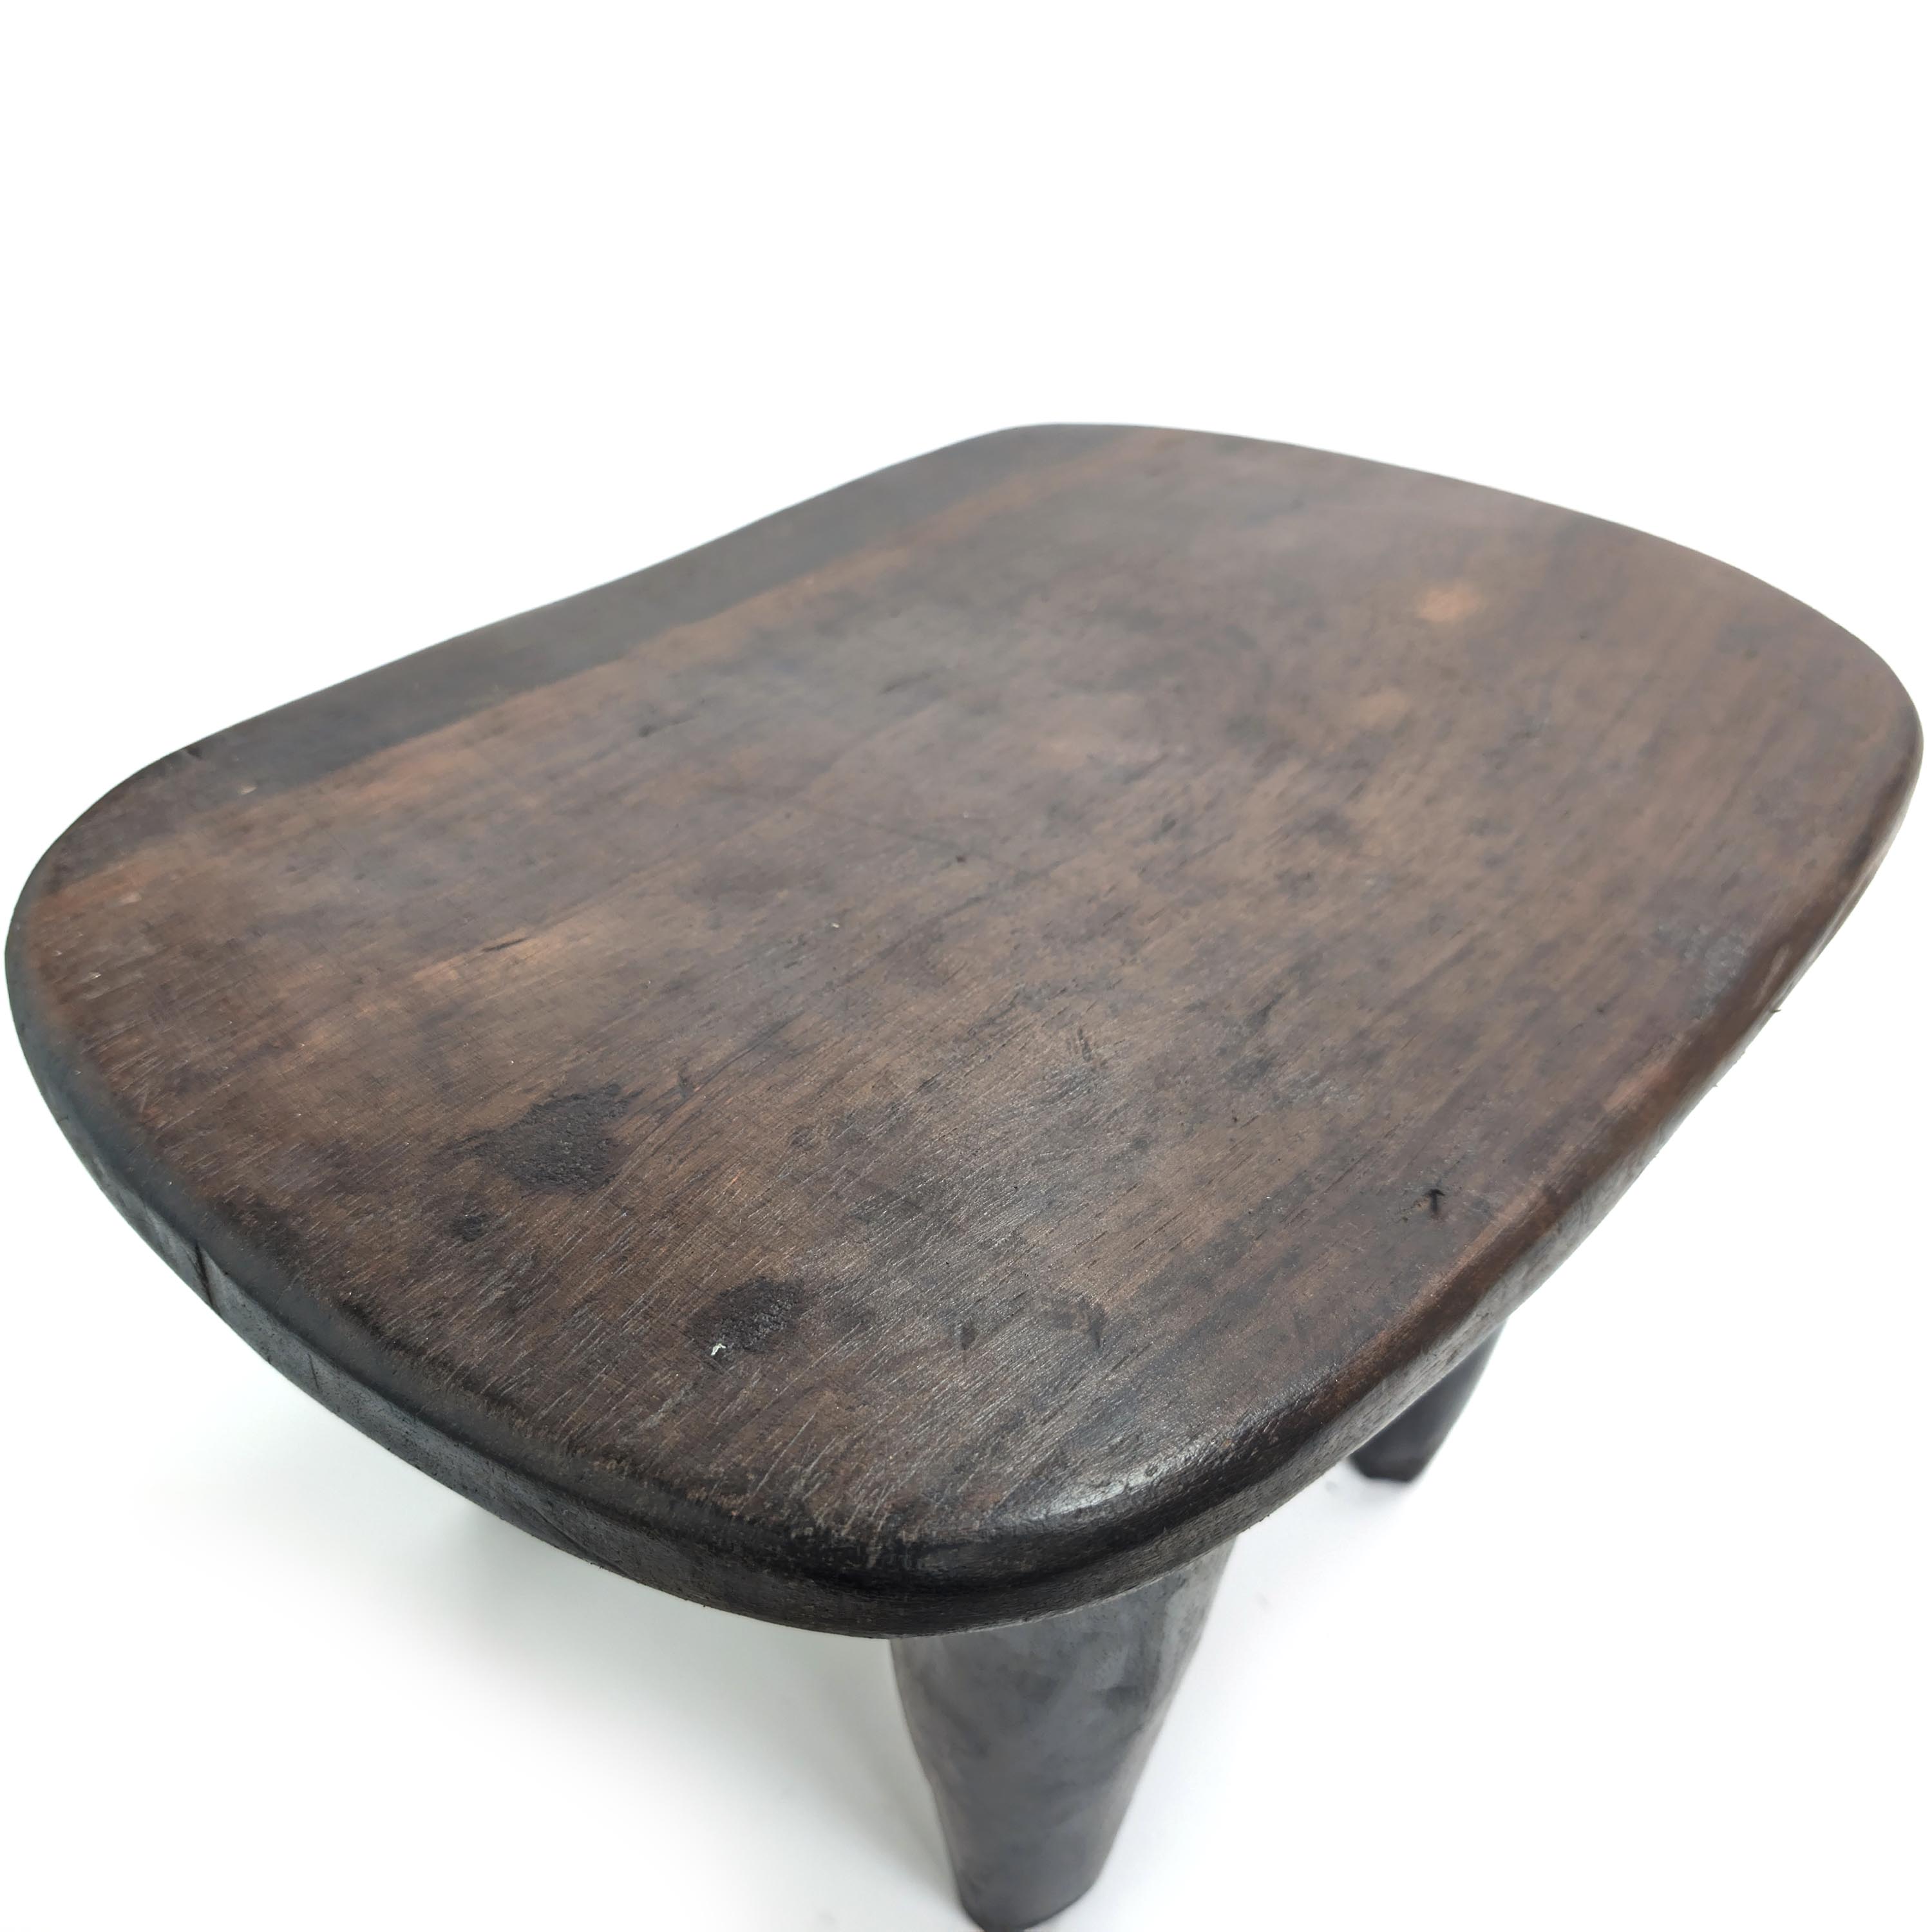 ロビ族 アフリカ スツール 椅子 セヌフォ アフリカンスツール - 家具